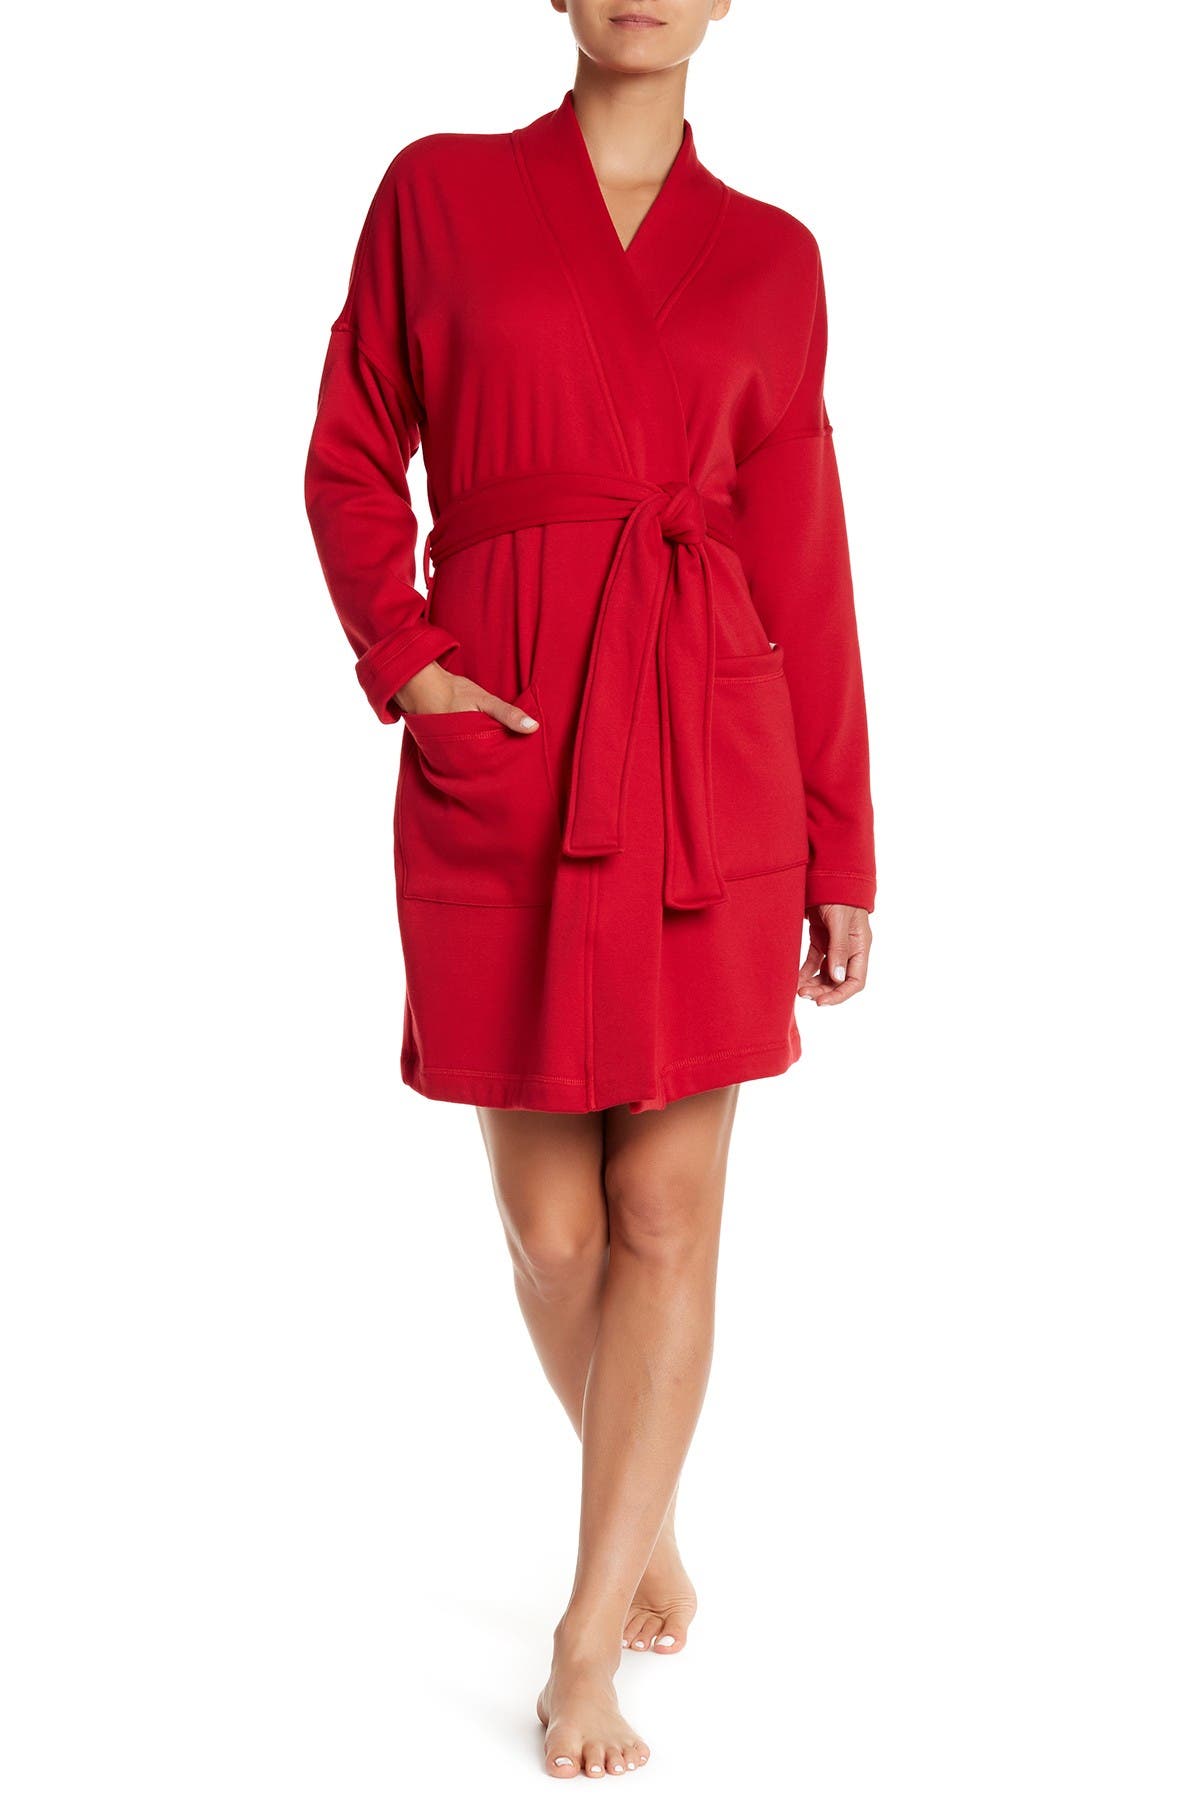 UGG | Braelyn Plush Fleece Lined Robe 